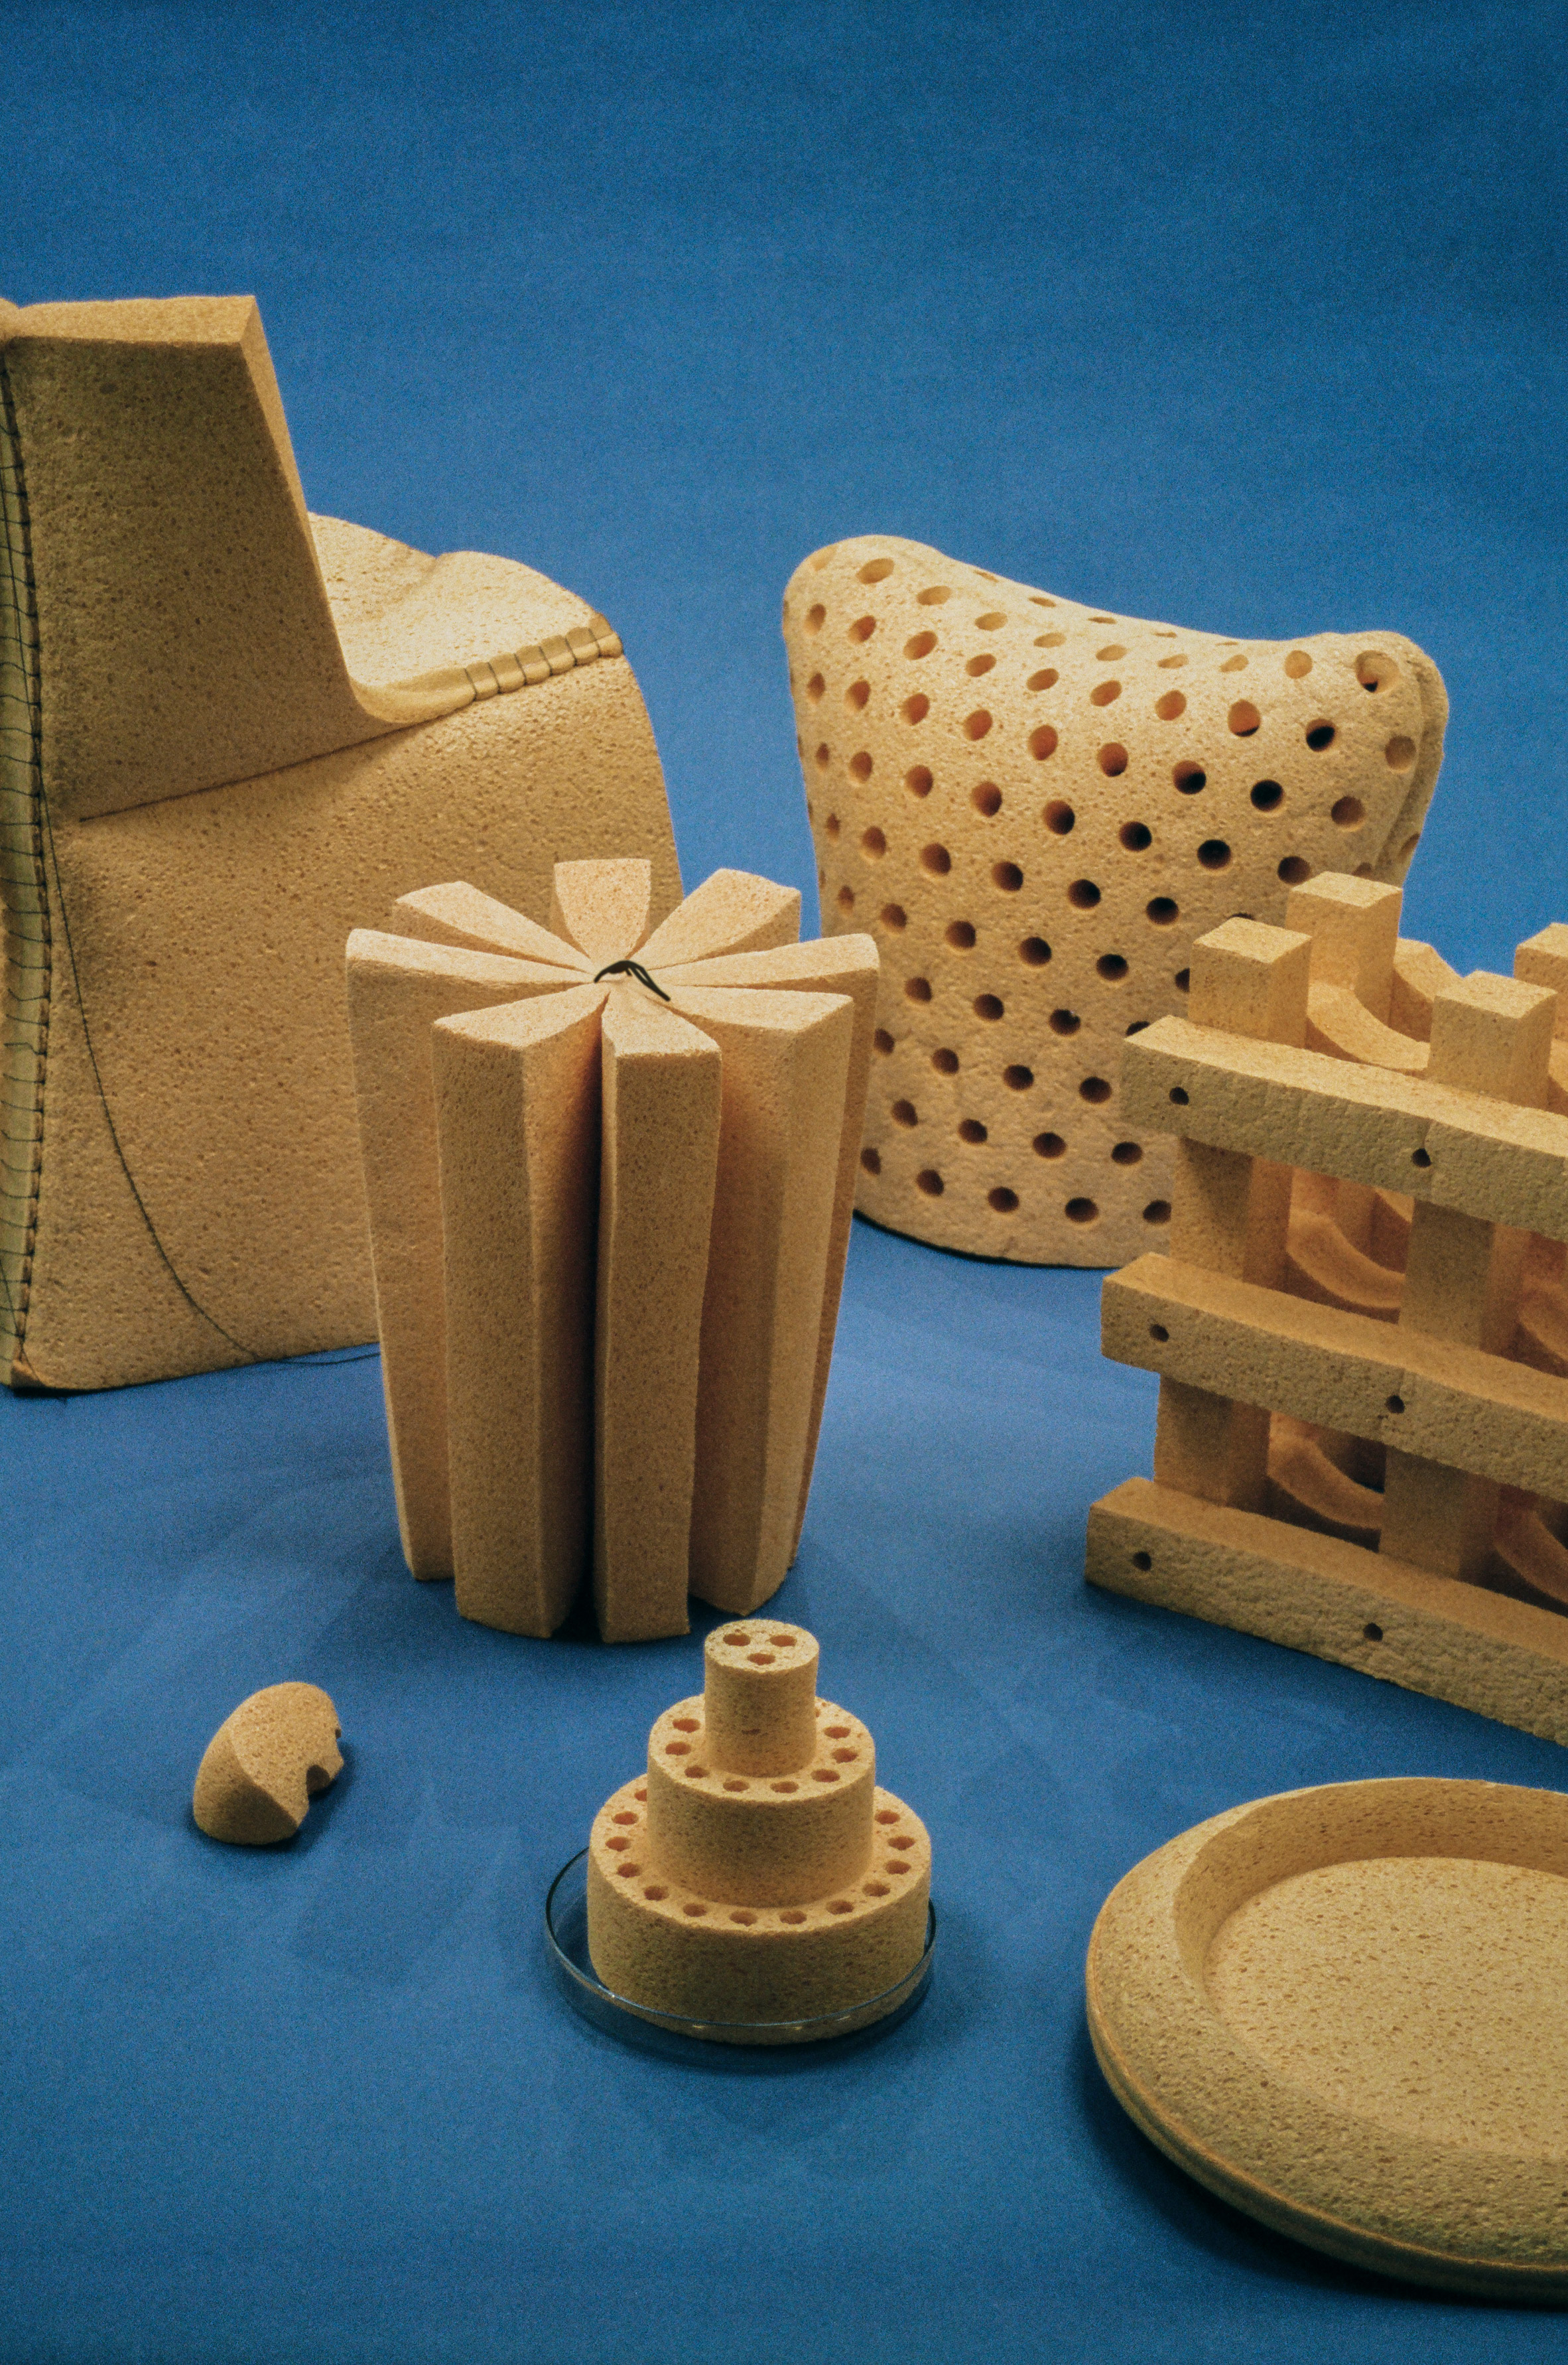 ÉCAL的家庭成长海绵家具扩展到其尺寸的十倍|ART-Arrakis | 建筑室内设计的创新与灵感